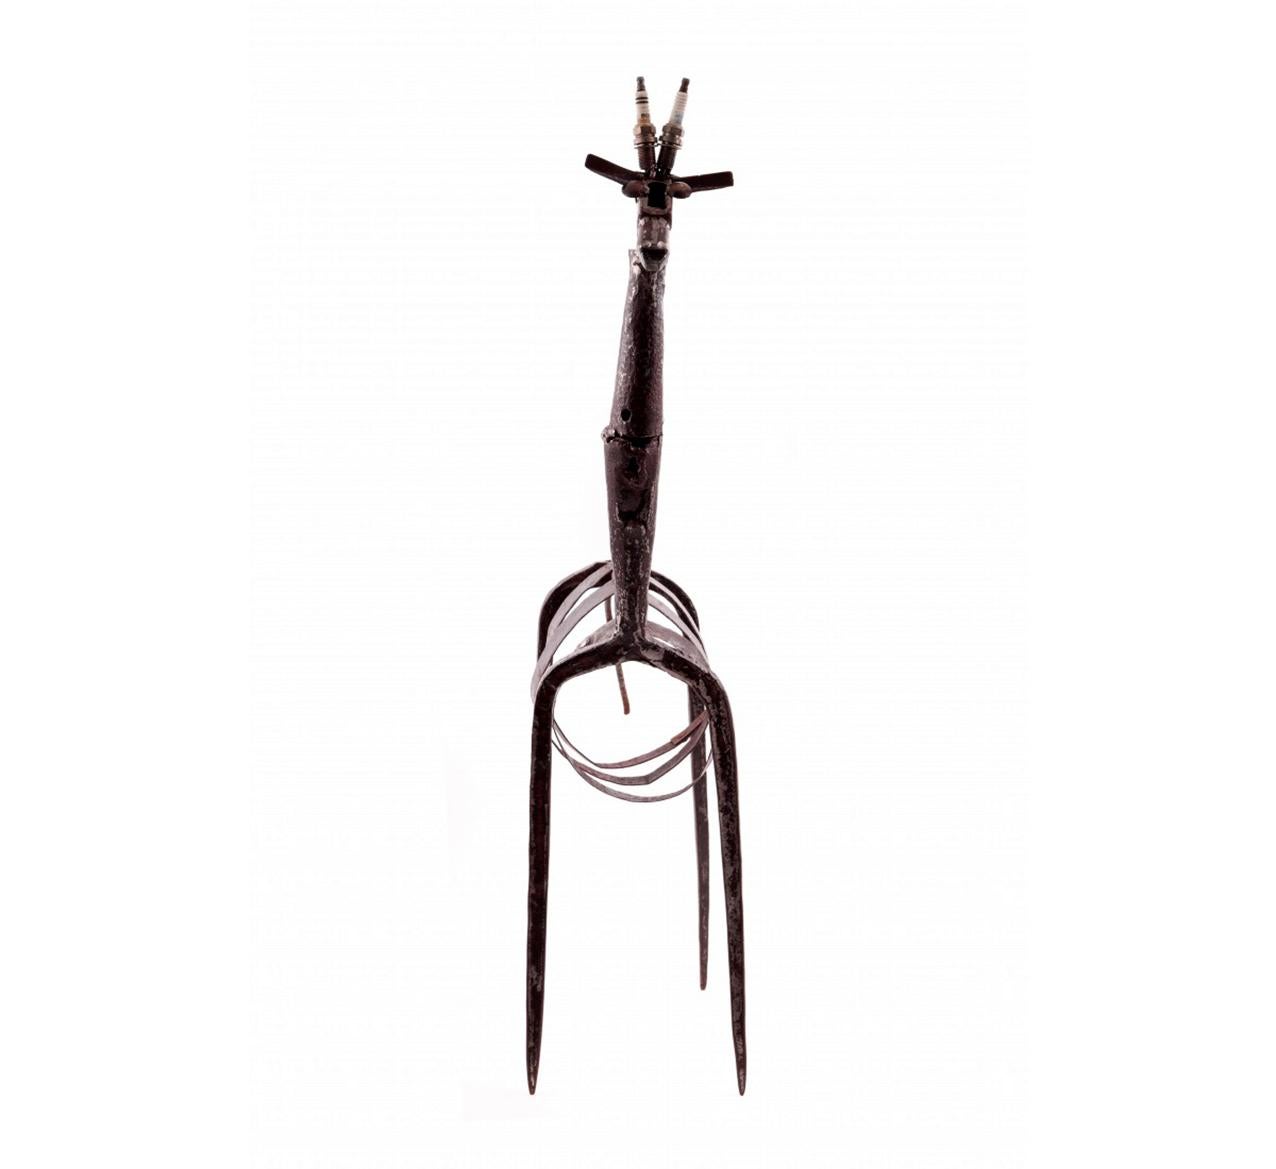 Giraffe von José Jerónimo einzelnes Kunstwerk
Eisenskulptur unter Verwendung von Werkzeugen und anderen Gegenständen
Unterzeichnet

Maße: 81 x 41 x 15 cm.
Private Sammlung.